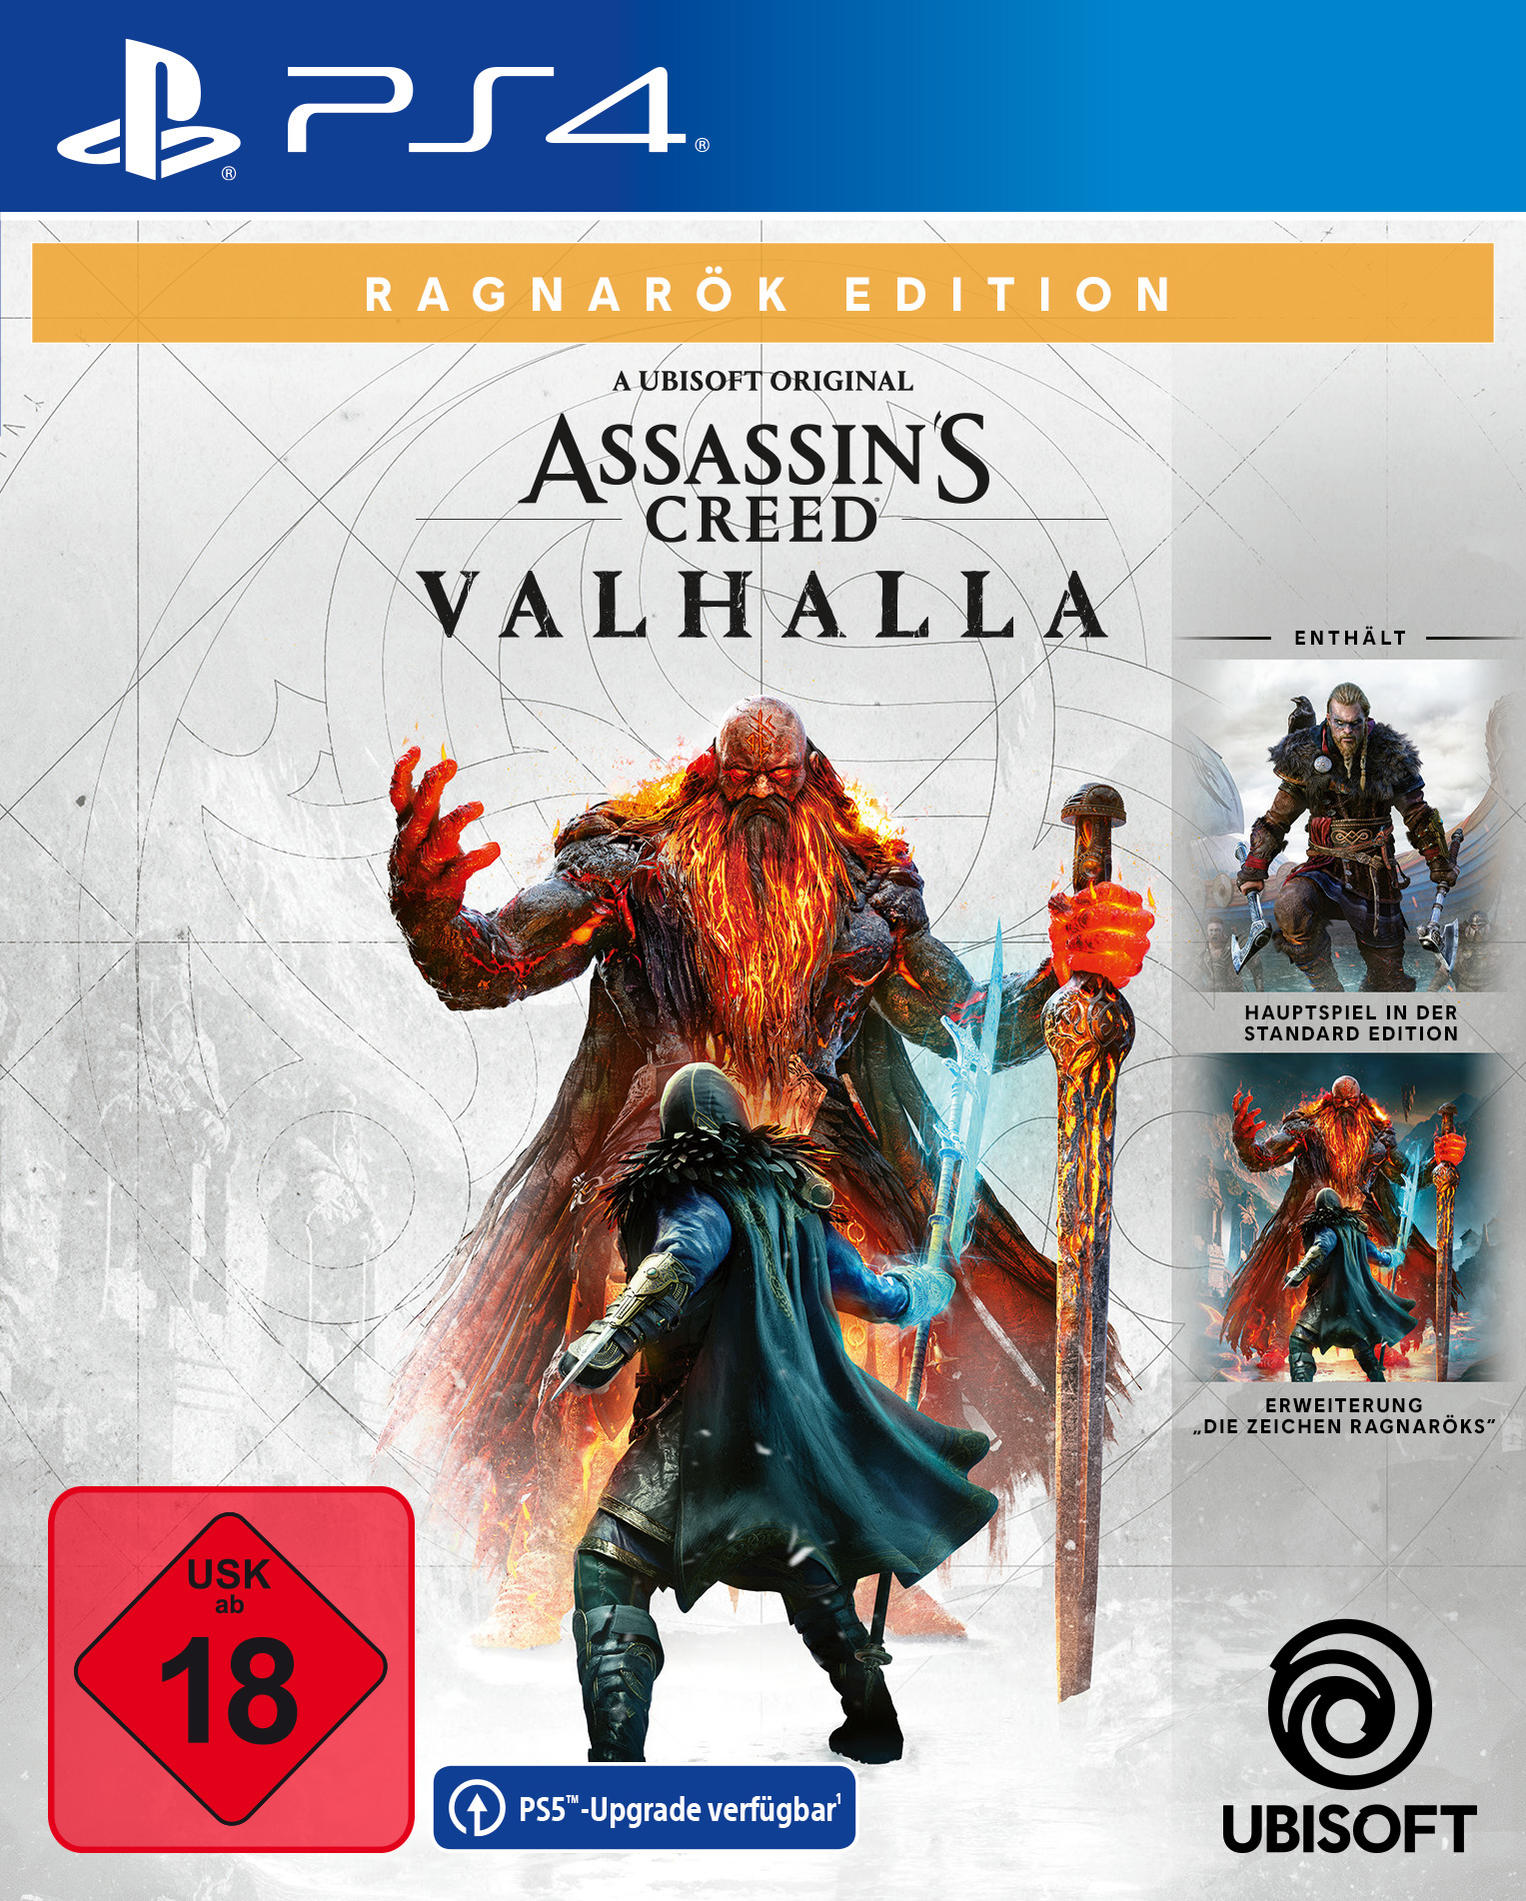 Ragnarök Valhalla: [PlayStation Creed 4] Edition - Assassin\'s